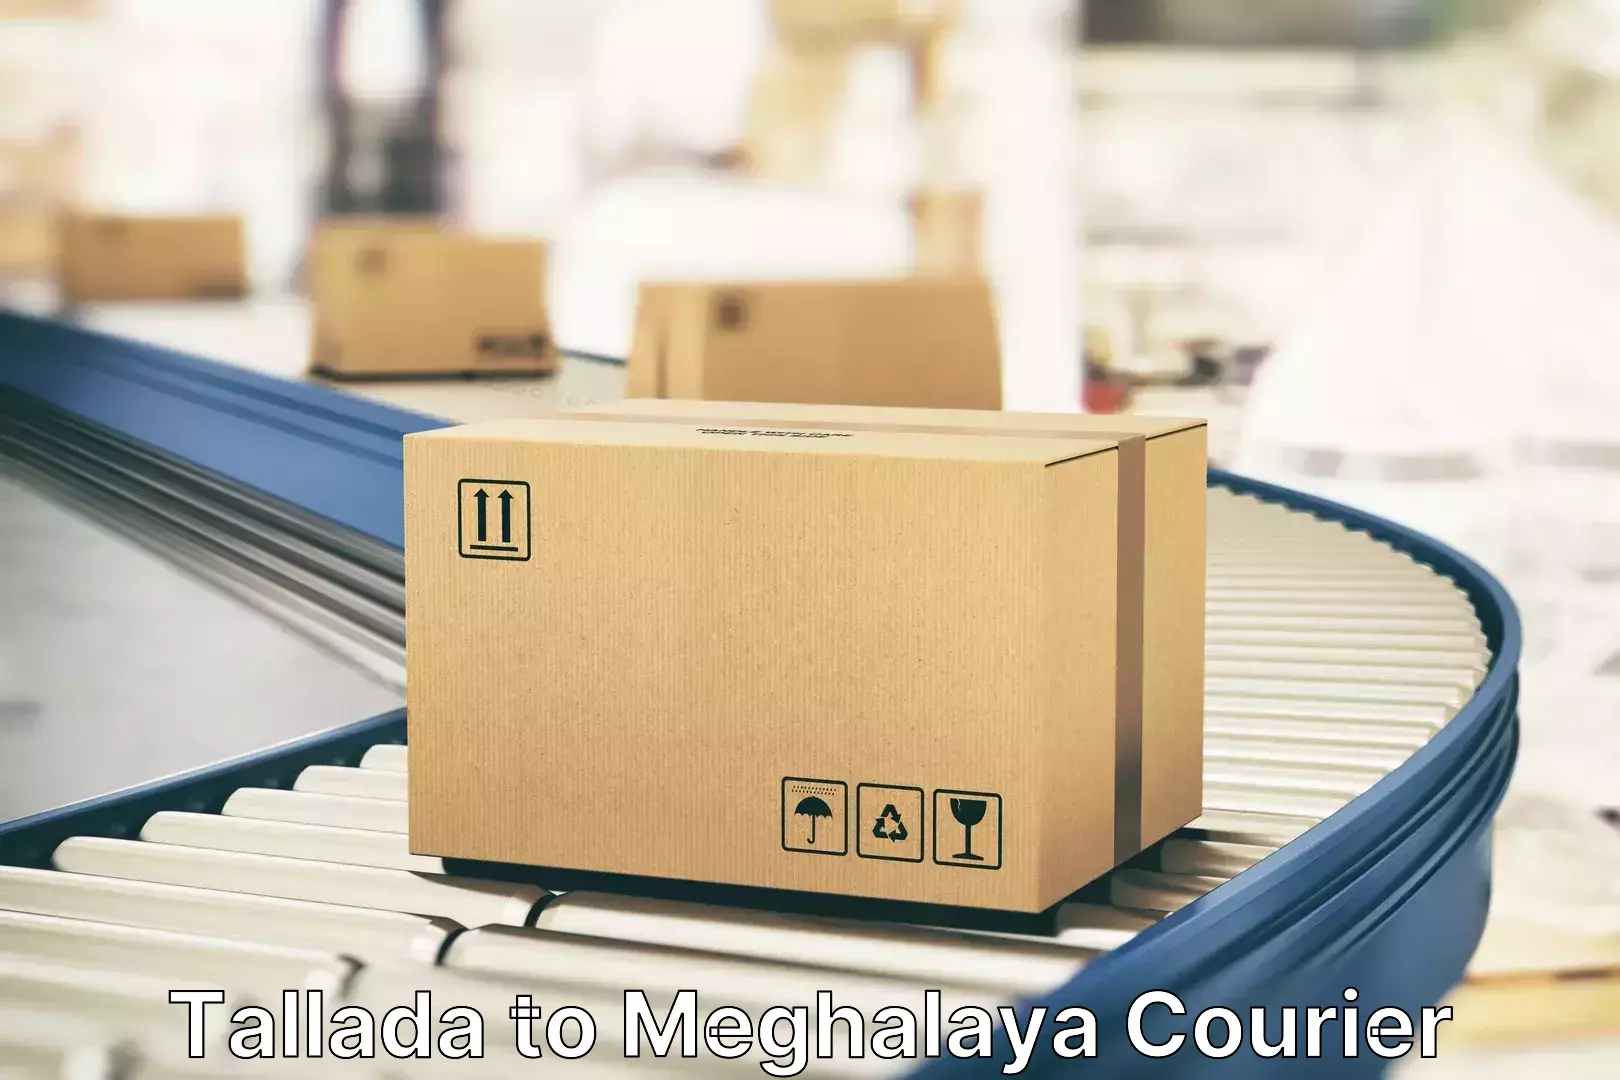 Luggage delivery estimate Tallada to Phulbari